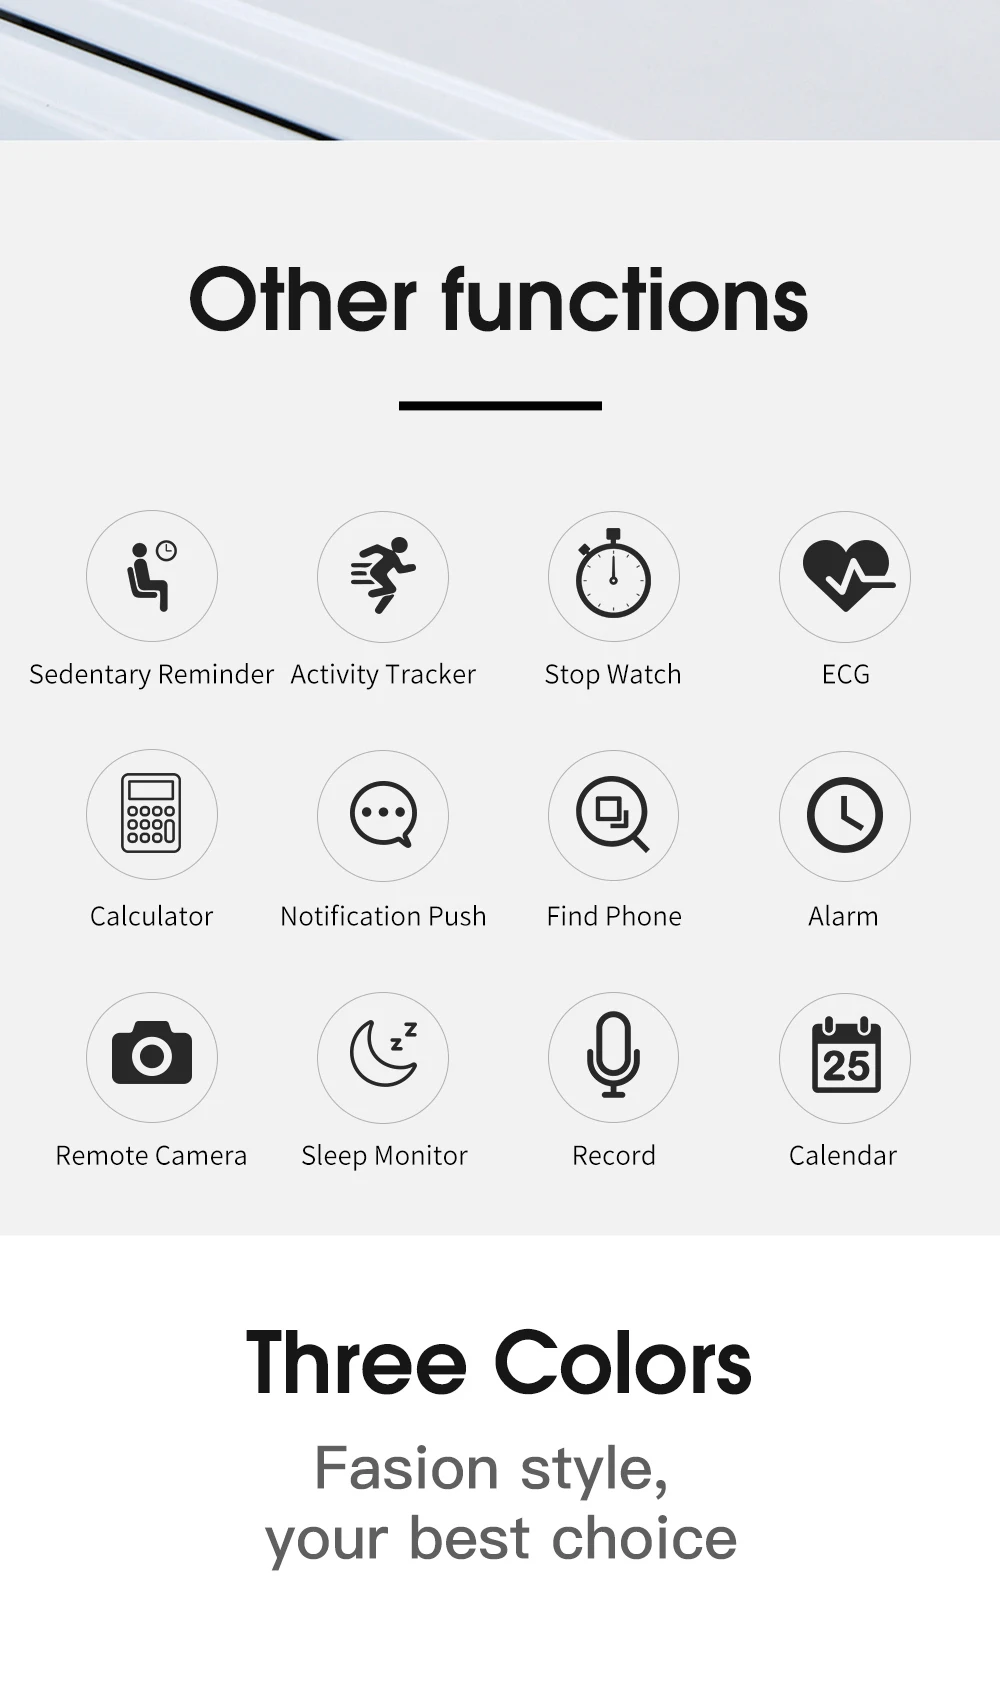 MRSVI Новые водонепроницаемые мужские и женские Bluetooth Смарт-часы серии W54 Смарт-часы для Apple iOS iPhone Xiaomi Android смартфон